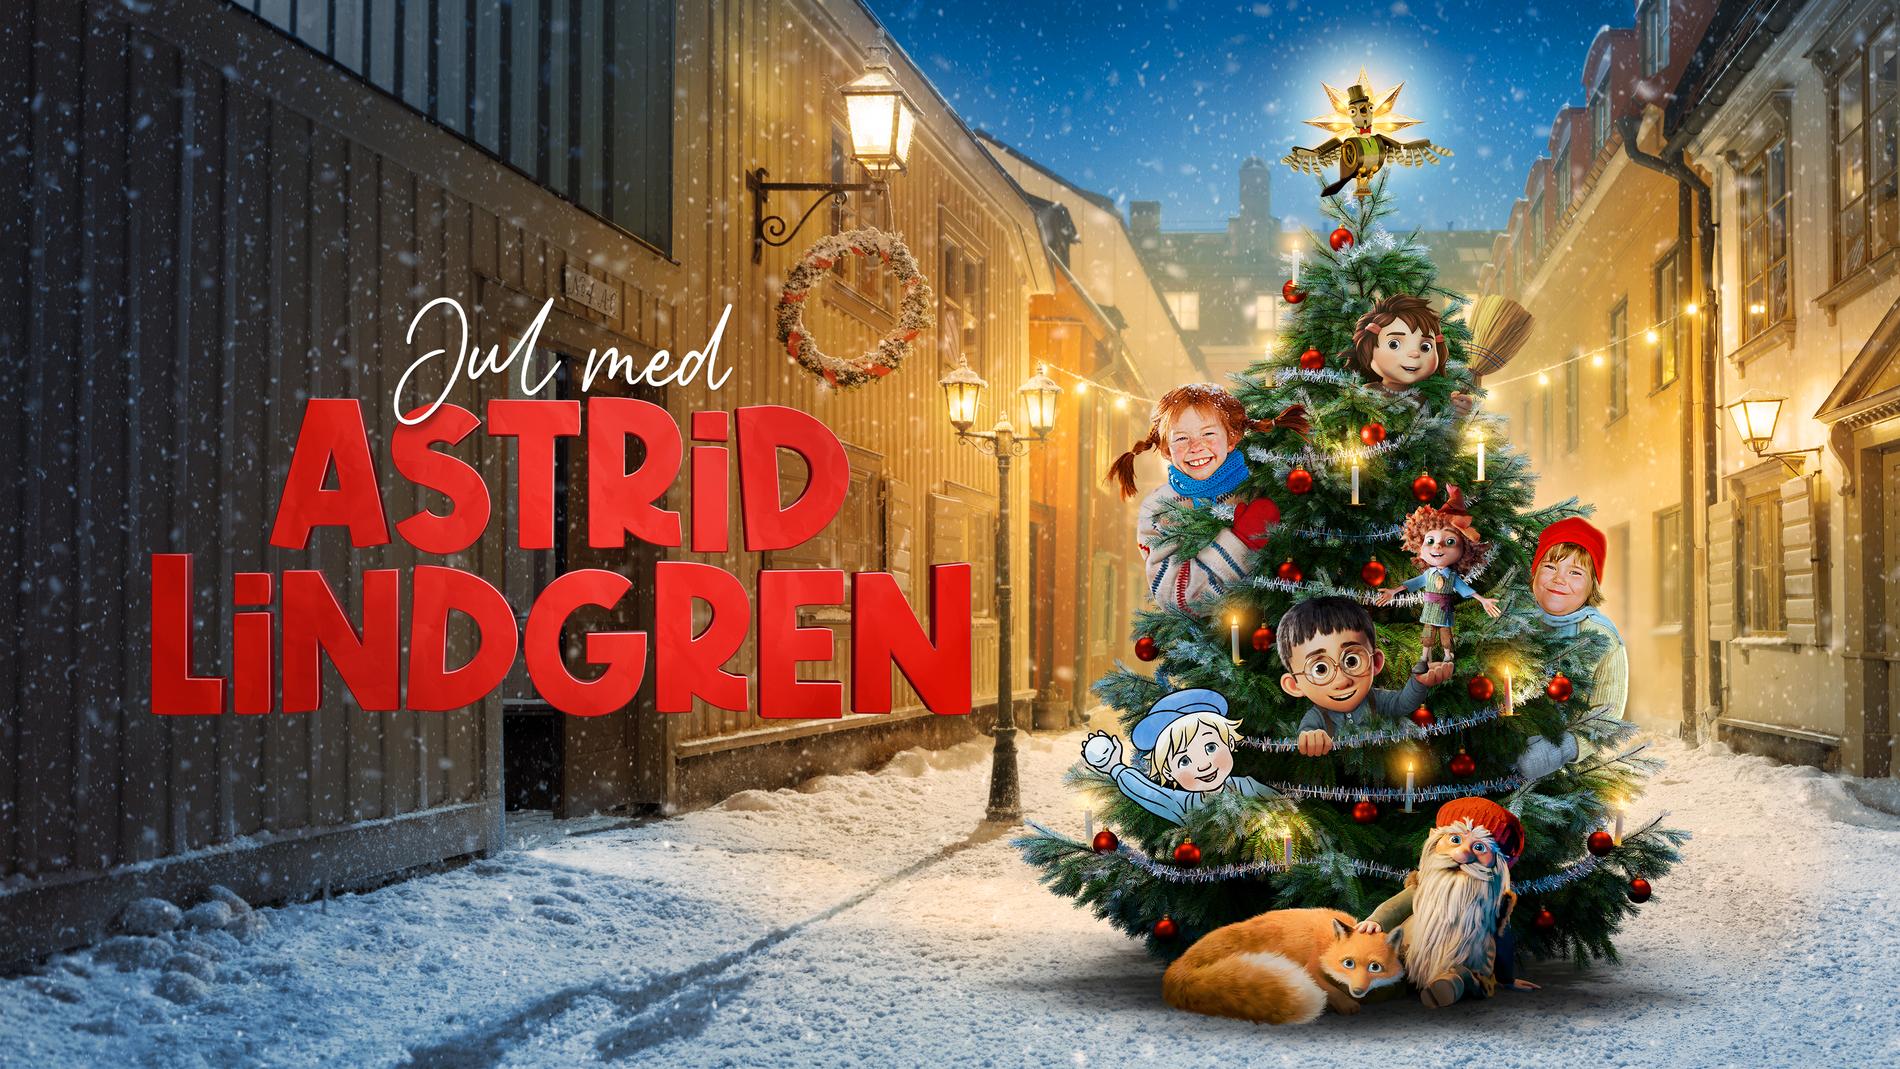 ”Jul med Astrid Lindgren”